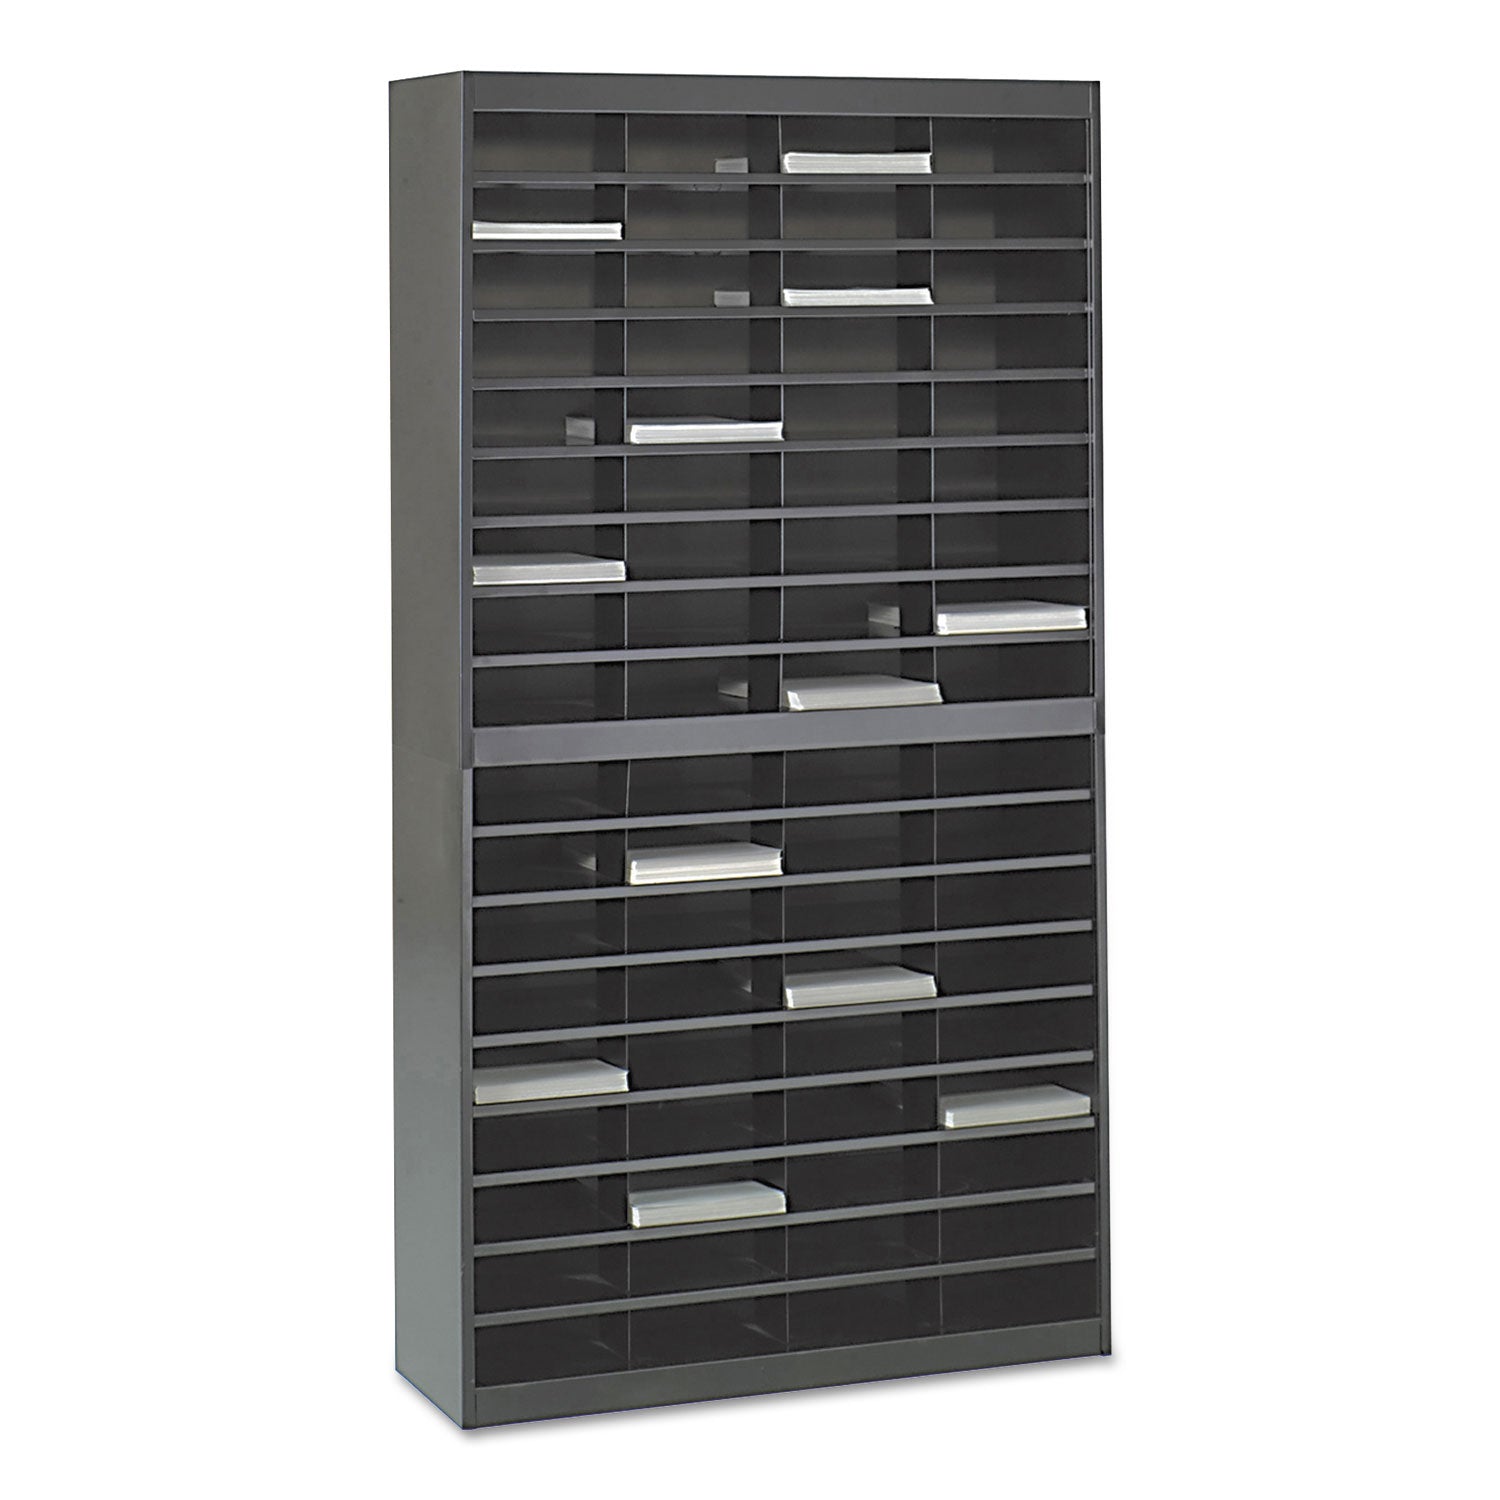 Steel/Fiberboard E-Z Stor Sorter, 72 Compartments, 37.5 x 12.75 x 71, Black - 